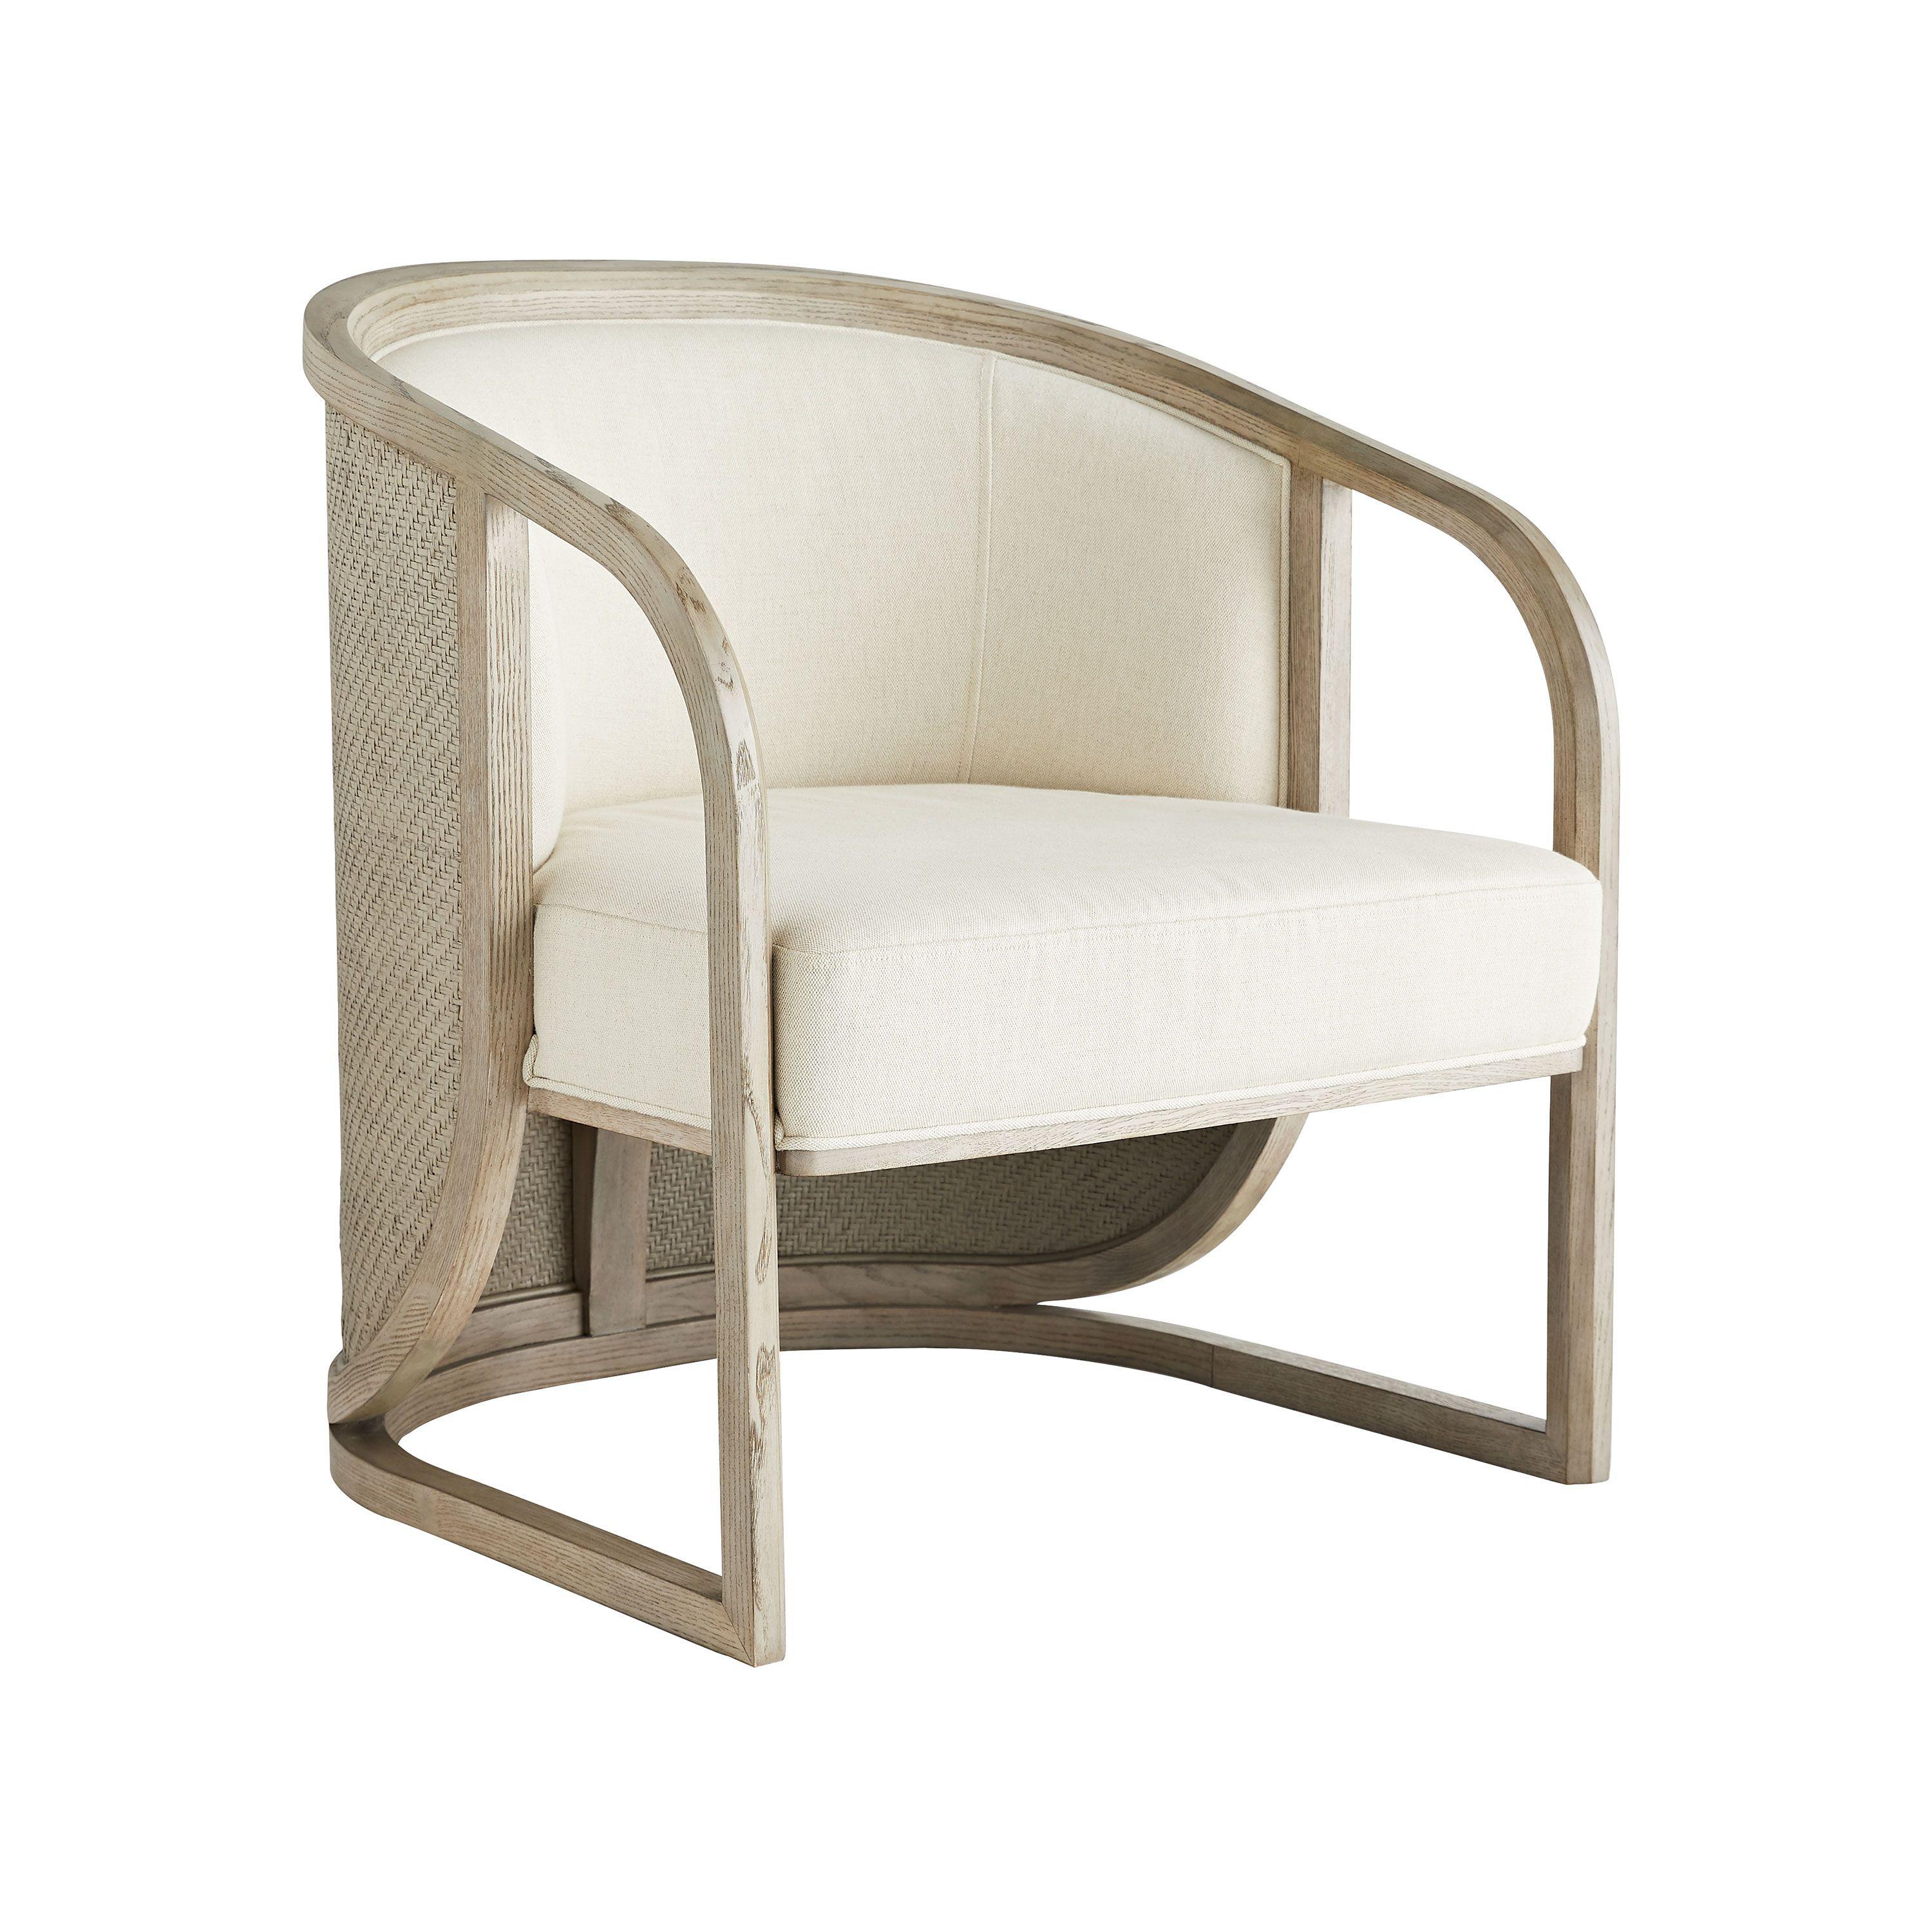 Купить Кресло Fortuna Lounge Chair в интернет-магазине roooms.ru